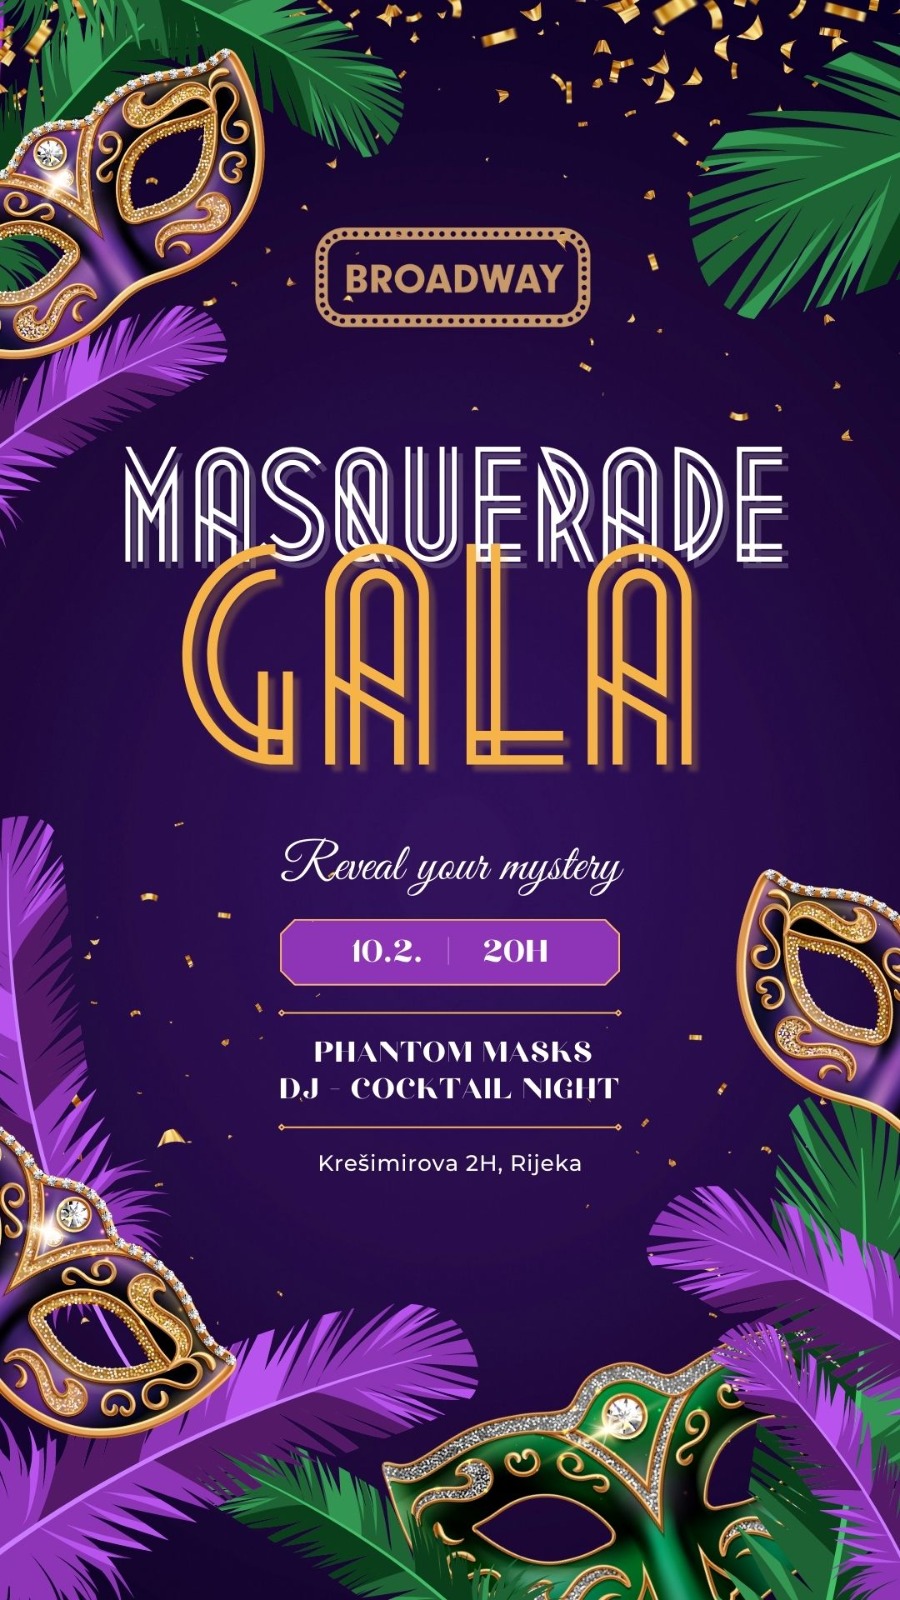 Ne propustite poseban maškarani event u gradu: Masquerade Gala!